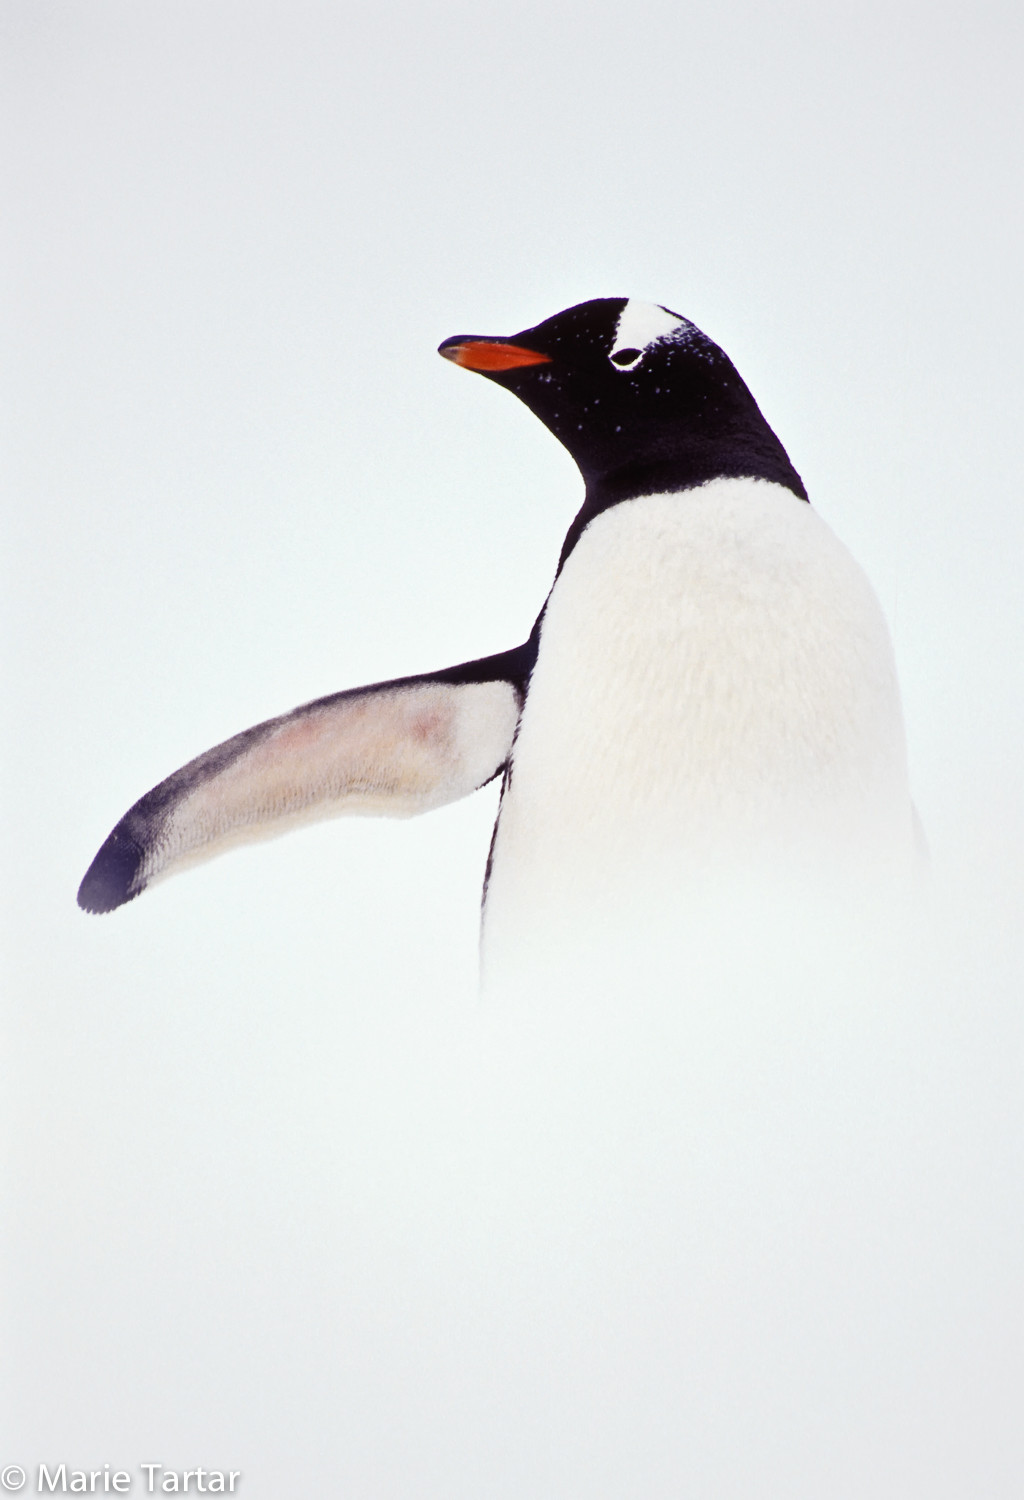 Gentoo penguin in snow in Antarctica